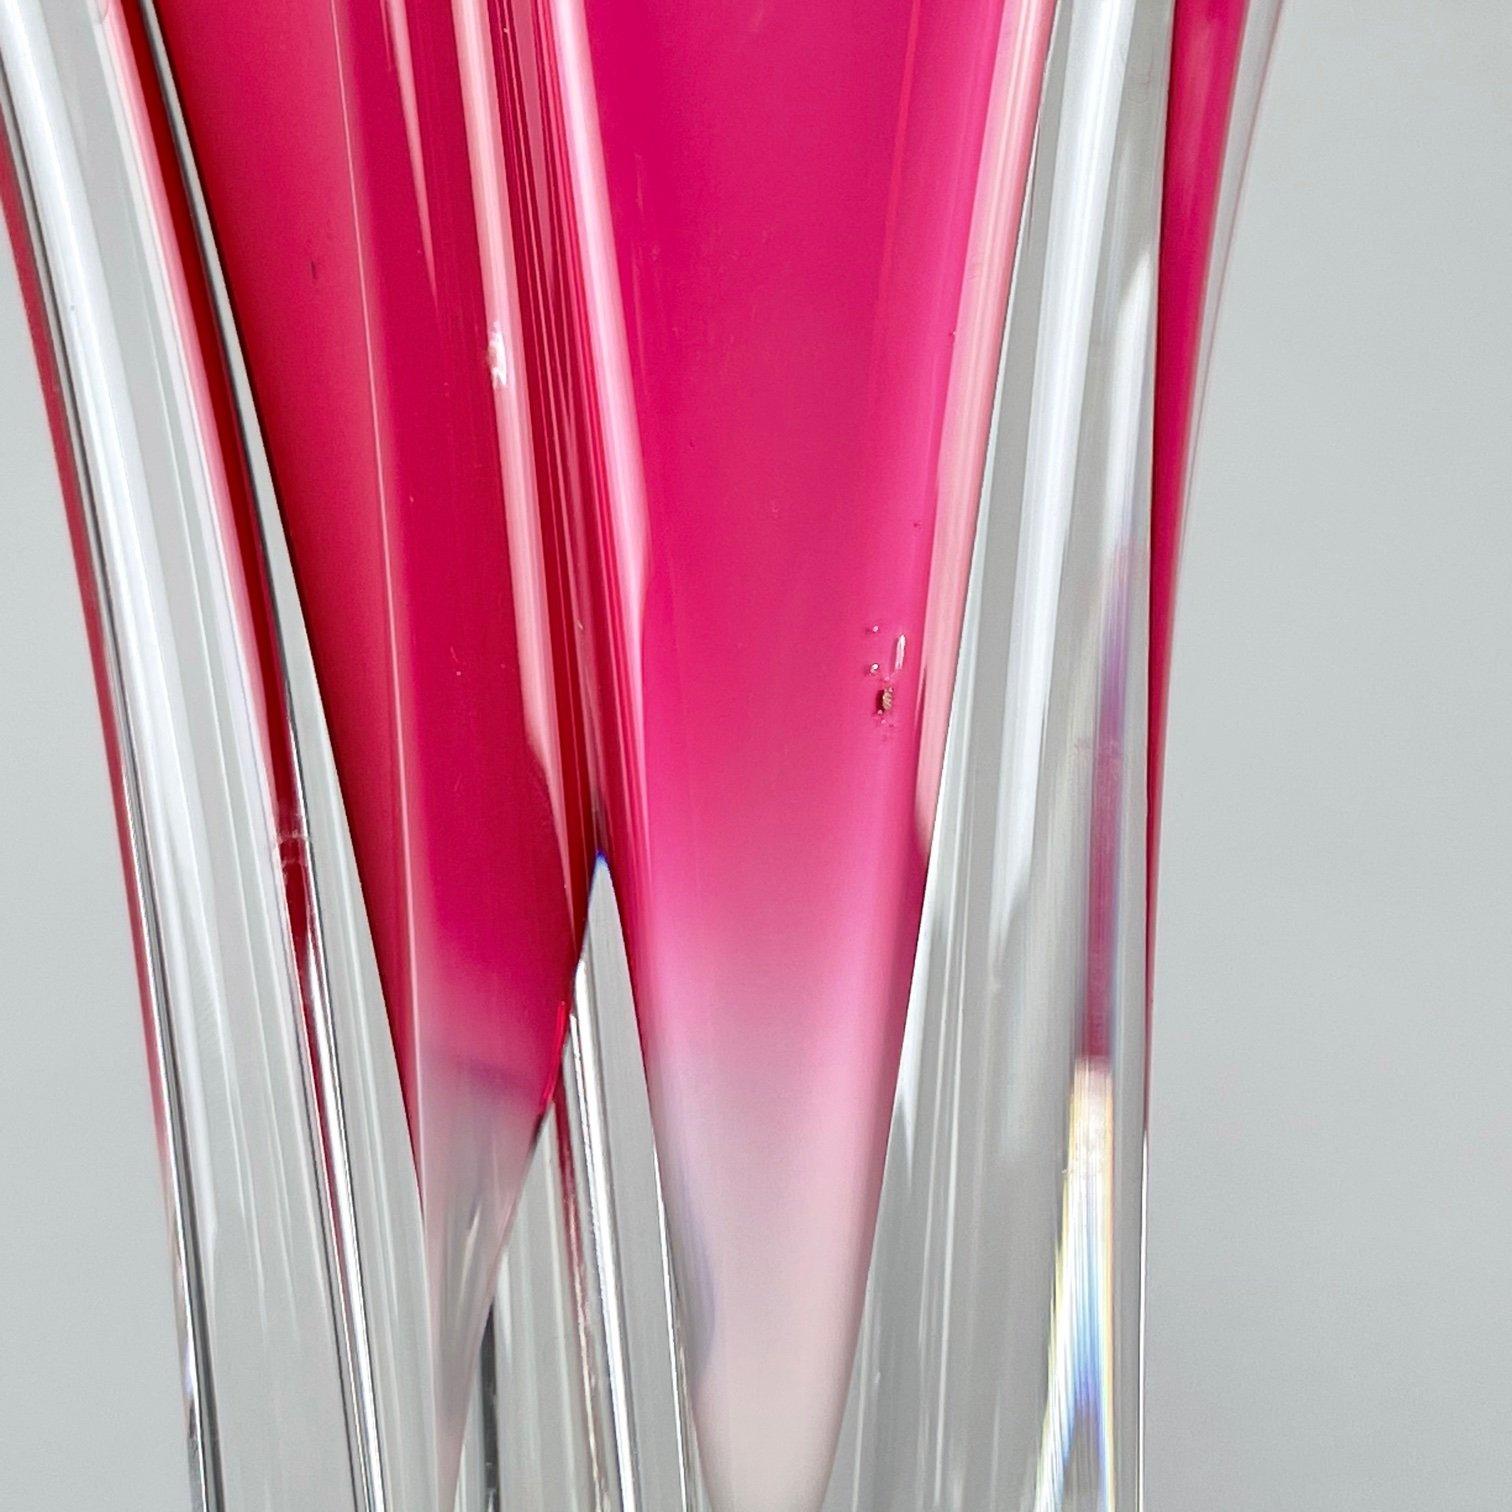 Czech Tall Art Glass Vase by Josef Hospodka for Chribska Glassworks, 1960's For Sale